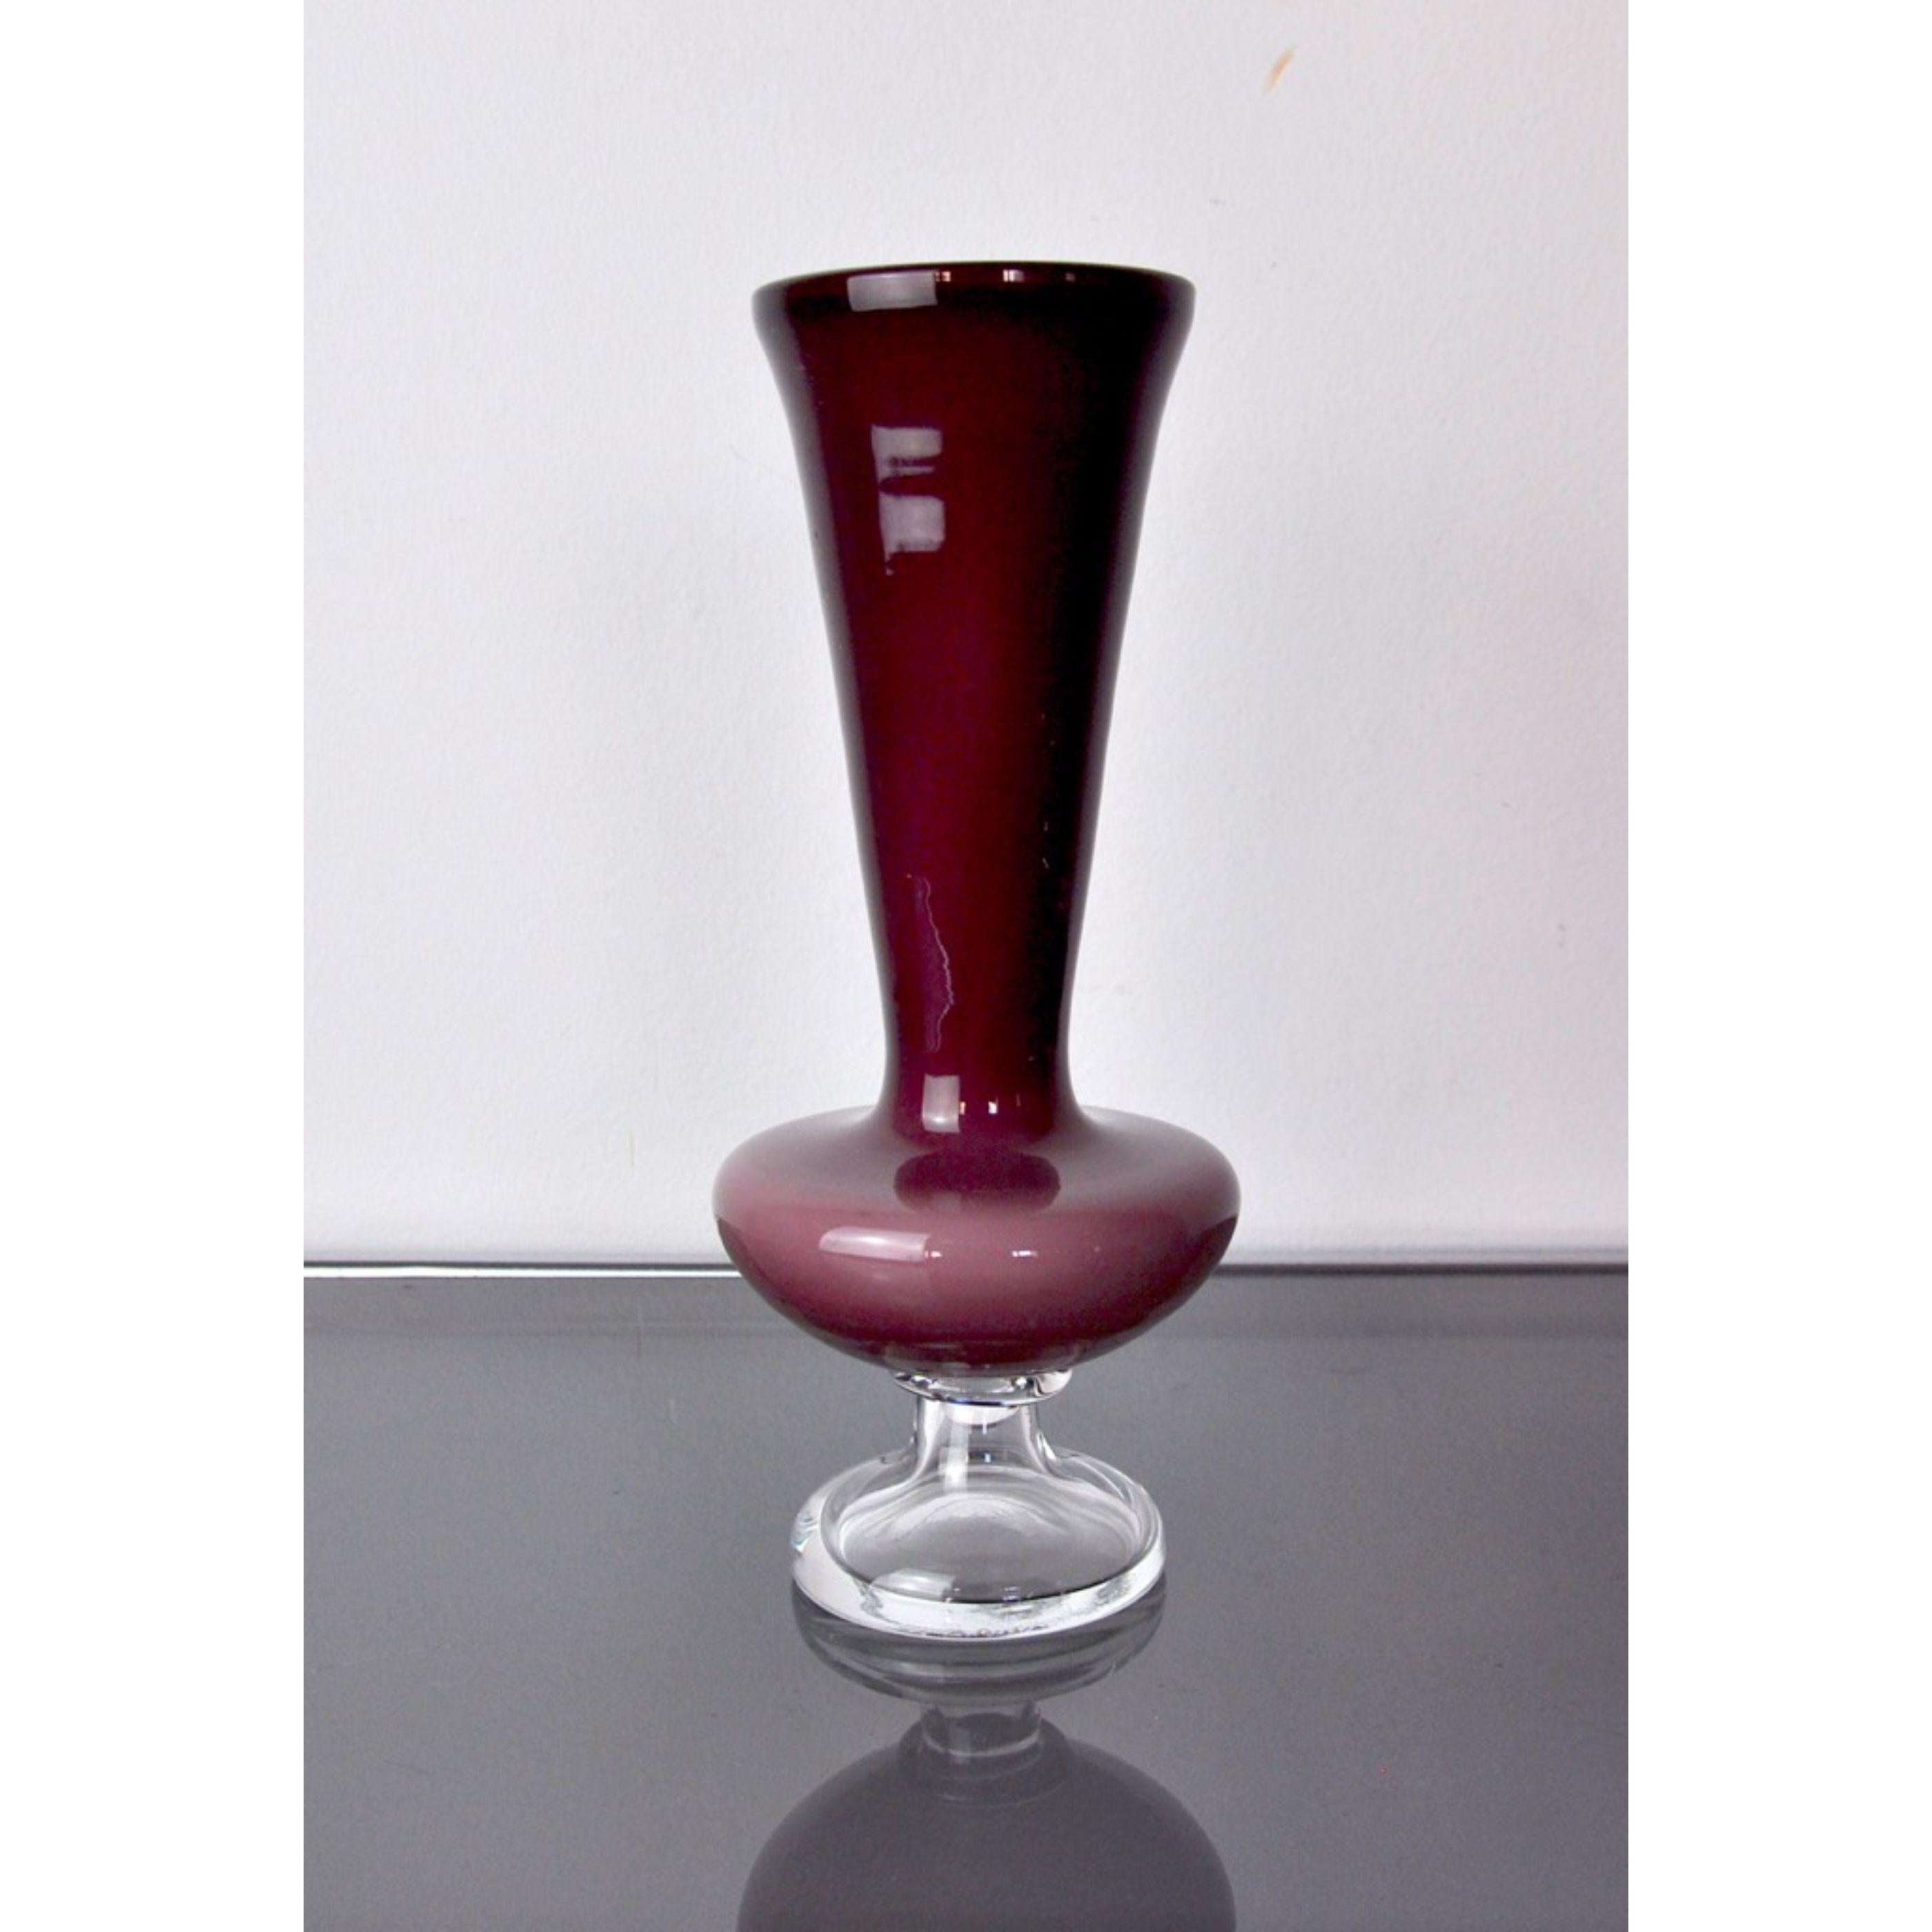 Vase aus lila und transparentem italienischem Kunstglas sommerso mundgeblasen von Hand.

Zuschreibung an Seguso, Murano Italien, 1970er Jahre.

Diese bunte Vase hat ein schönes Design.

Verwenden Sie sie als dekorative Vase und stellen Sie sie